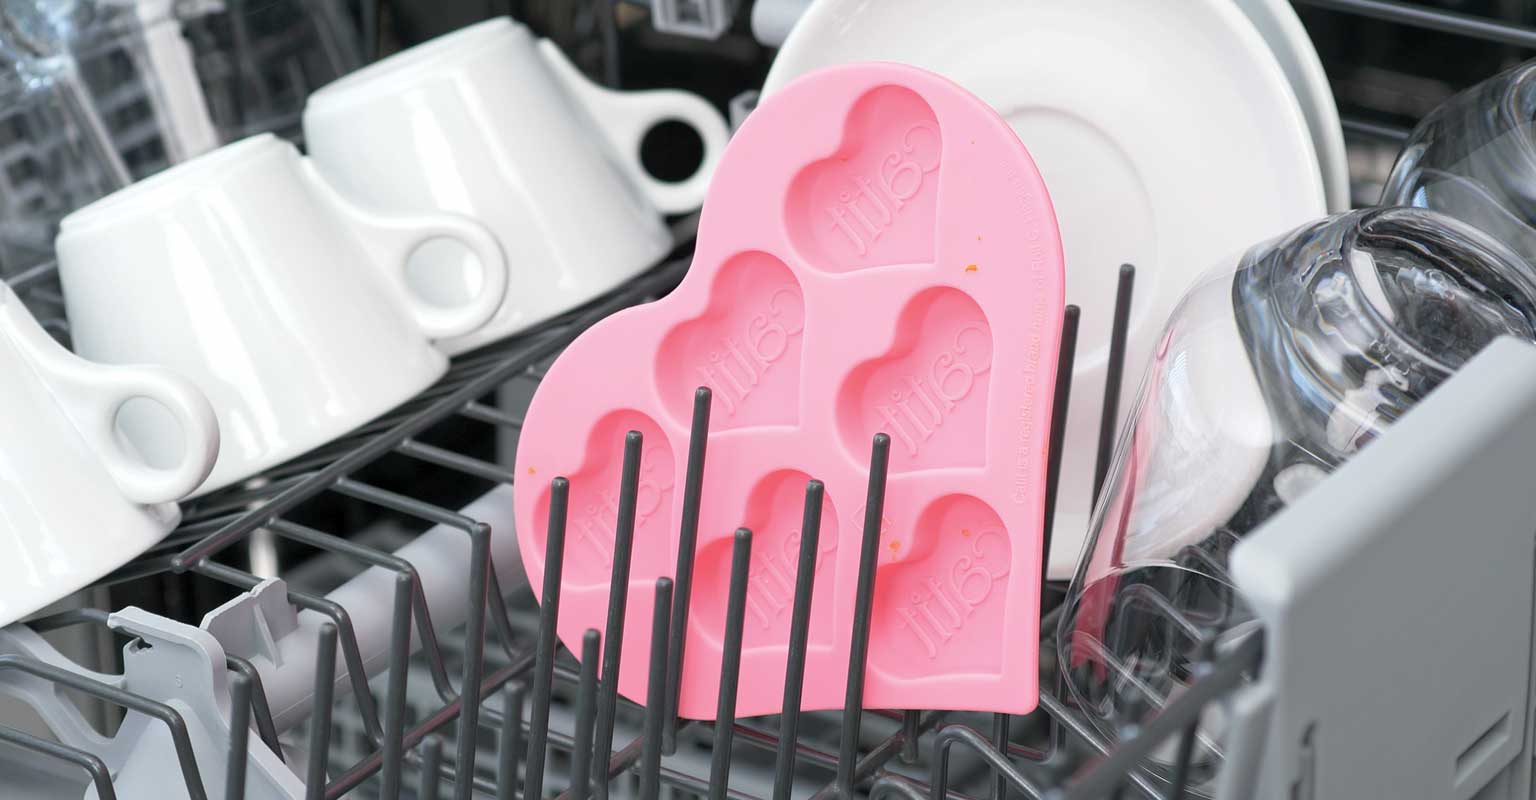 Dishwasher-safe silicone ice tray